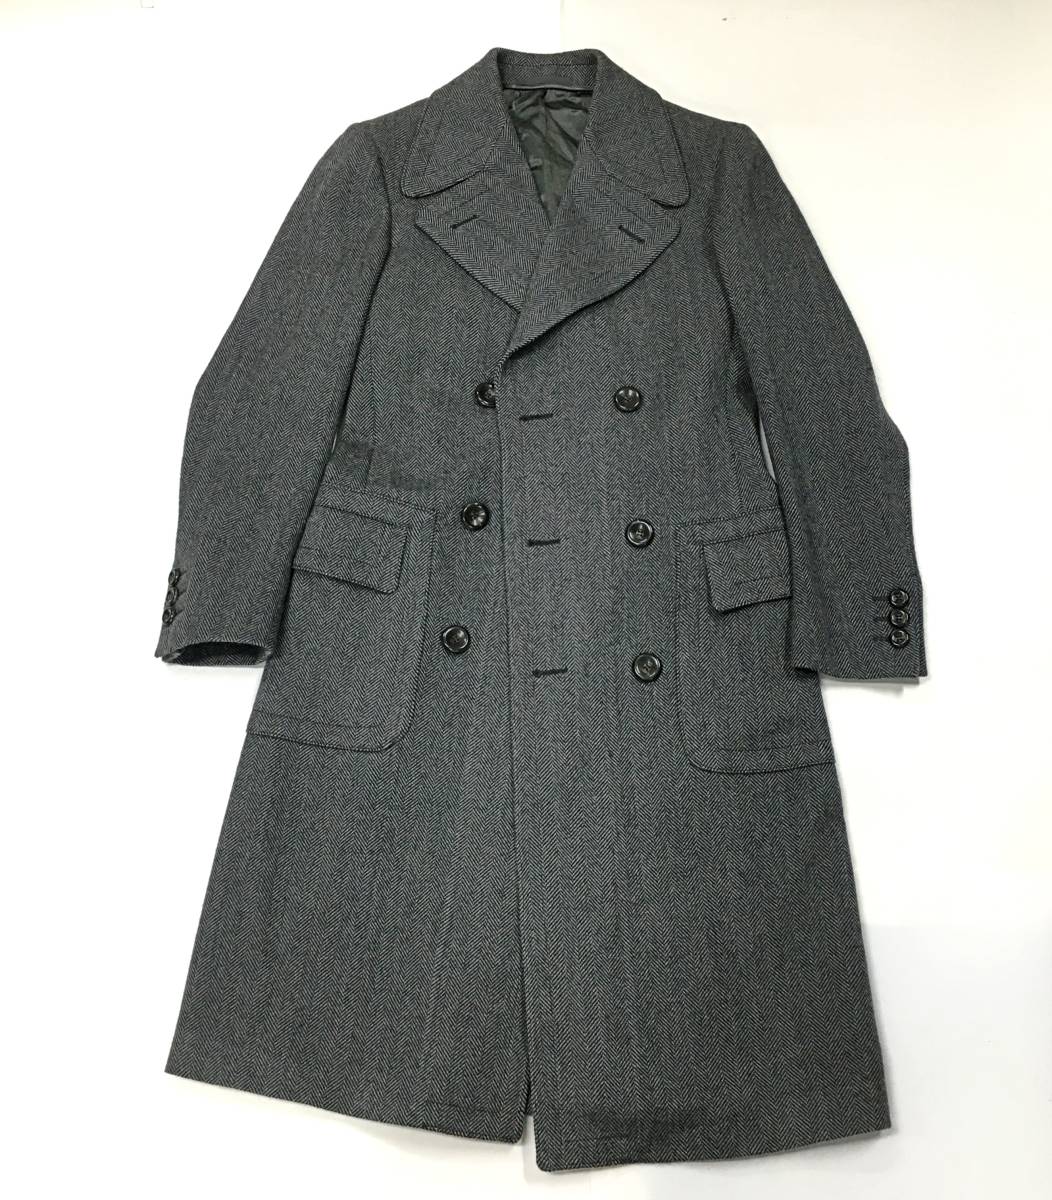 B9-265 グッチ メンズ ロングコート サイズ 44 ウール 100% チャコール/グレー系 ダブル コート ピーコート 男性 スーツ GUCCI_画像1